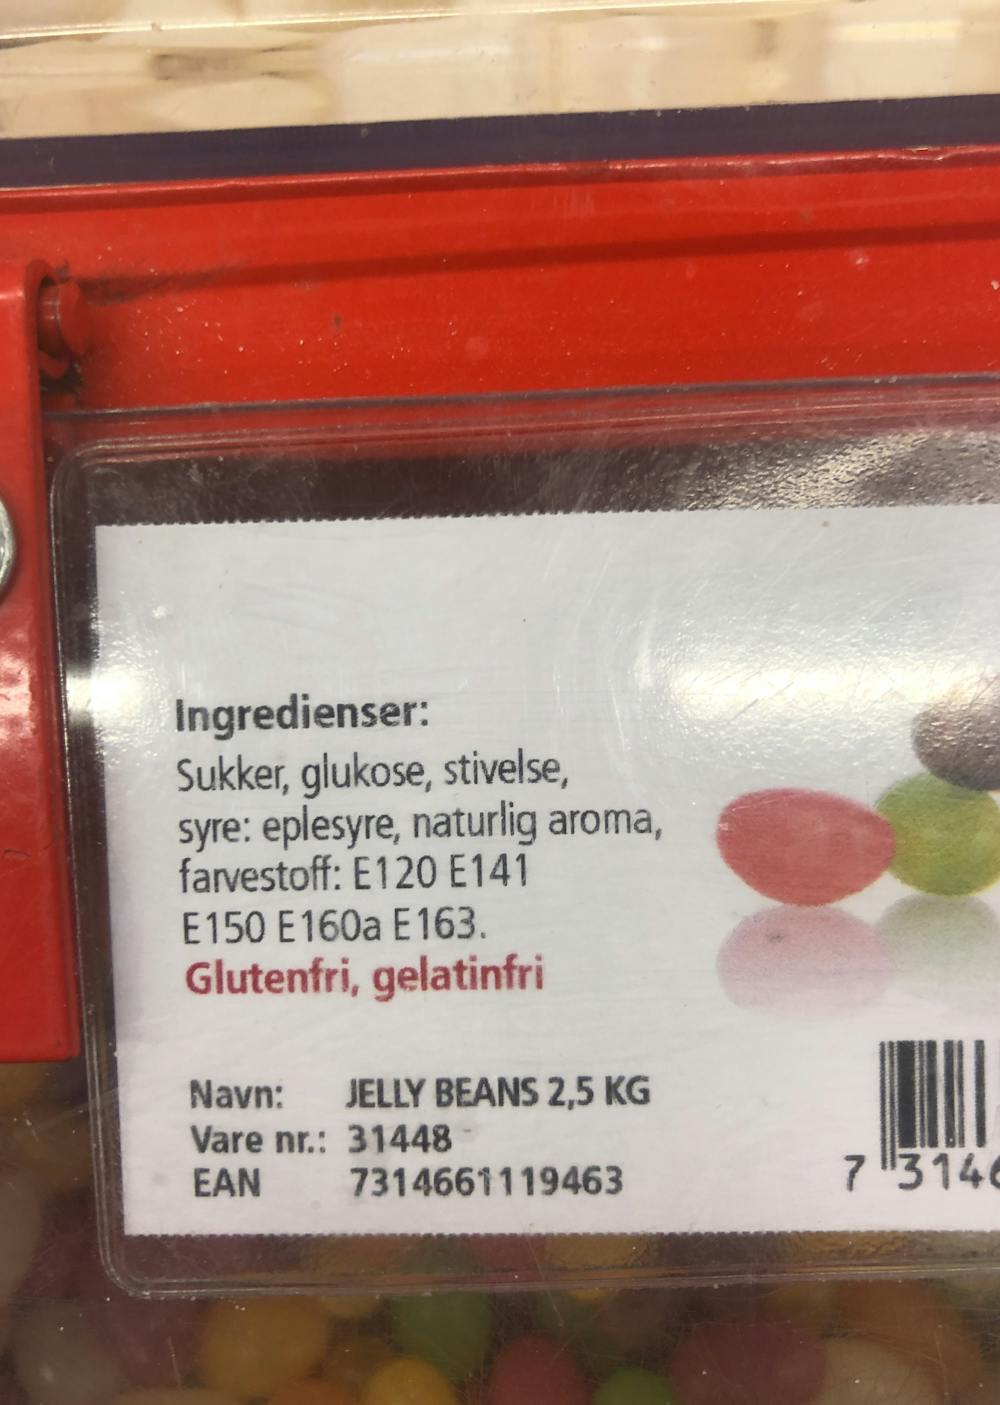 Ingredienslisten til Jelly beans